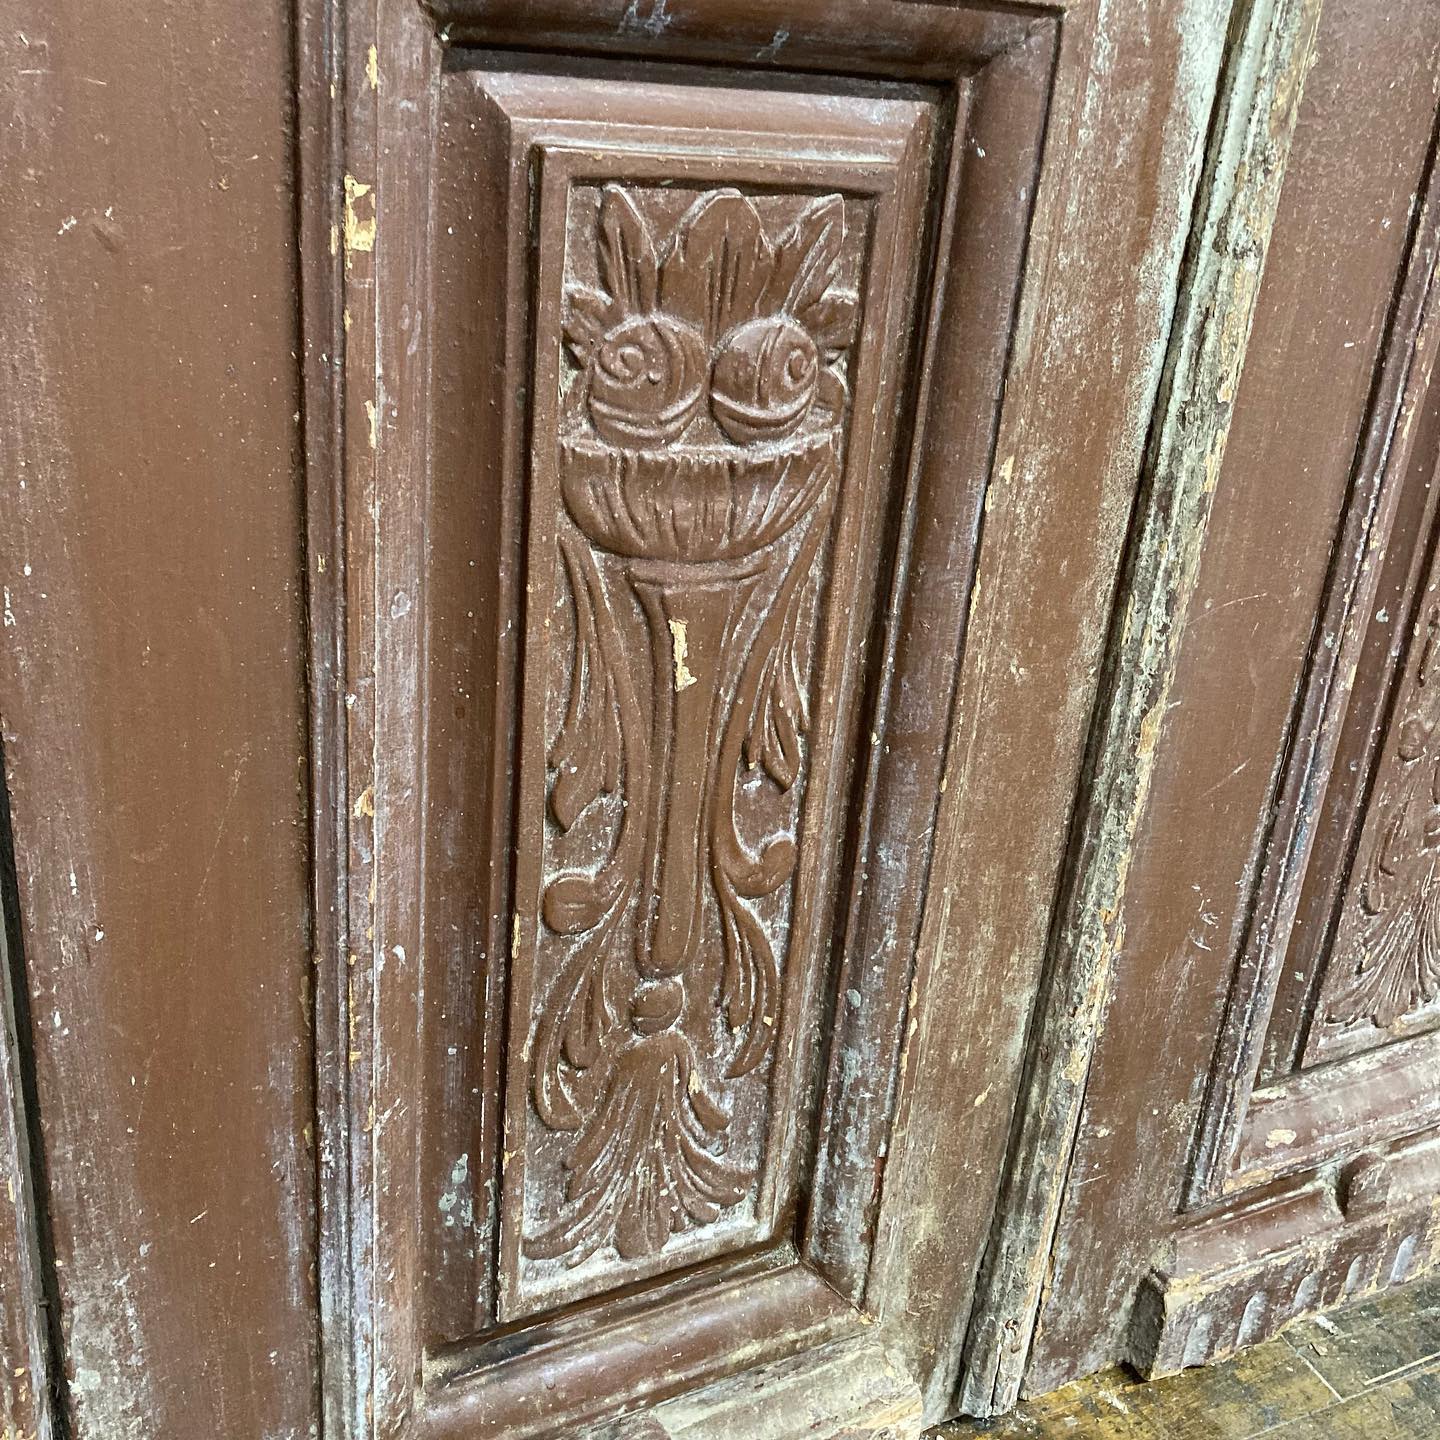 Antique Rustic European Doors